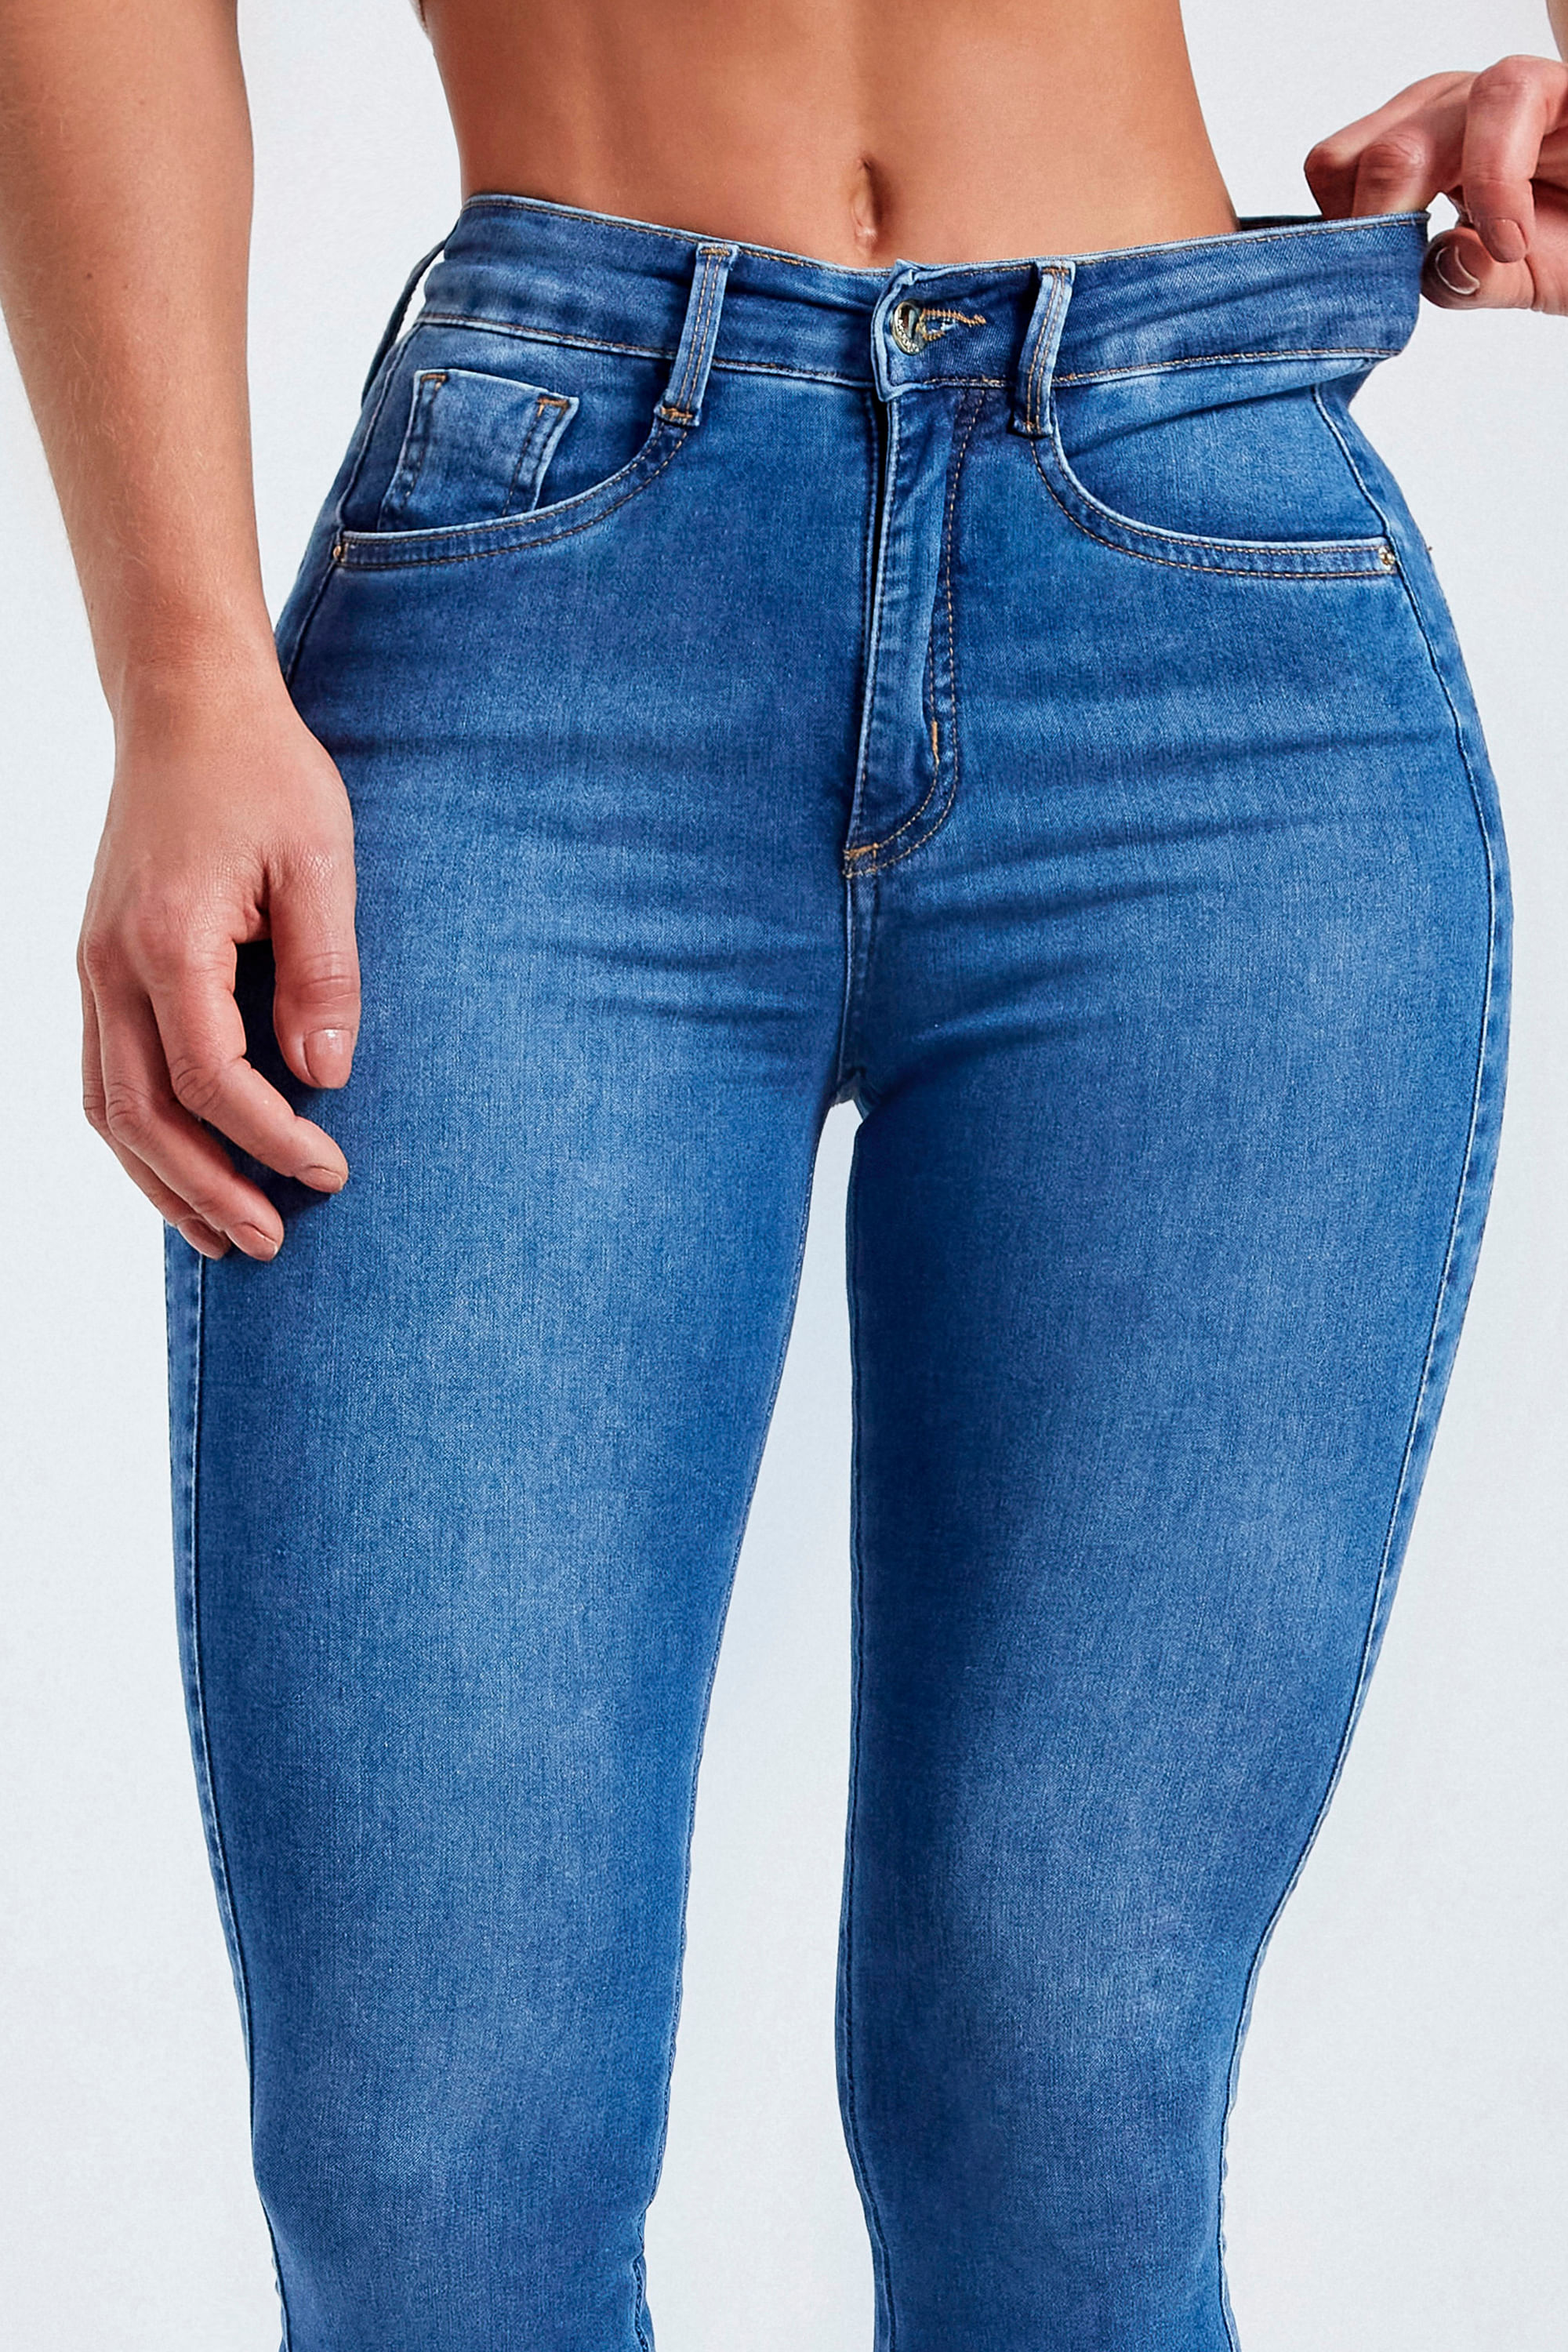 Modab - Calça Modeladora Jeans Ultra Modelador CURVE 😱 🎯EFEITO SUPER  MODELADOR Comprime a Barriga e Empina Bumbum🙌🏻 A Calça Jeans Modab é a  peça que não pode faltar no guarda-roupa feminino.